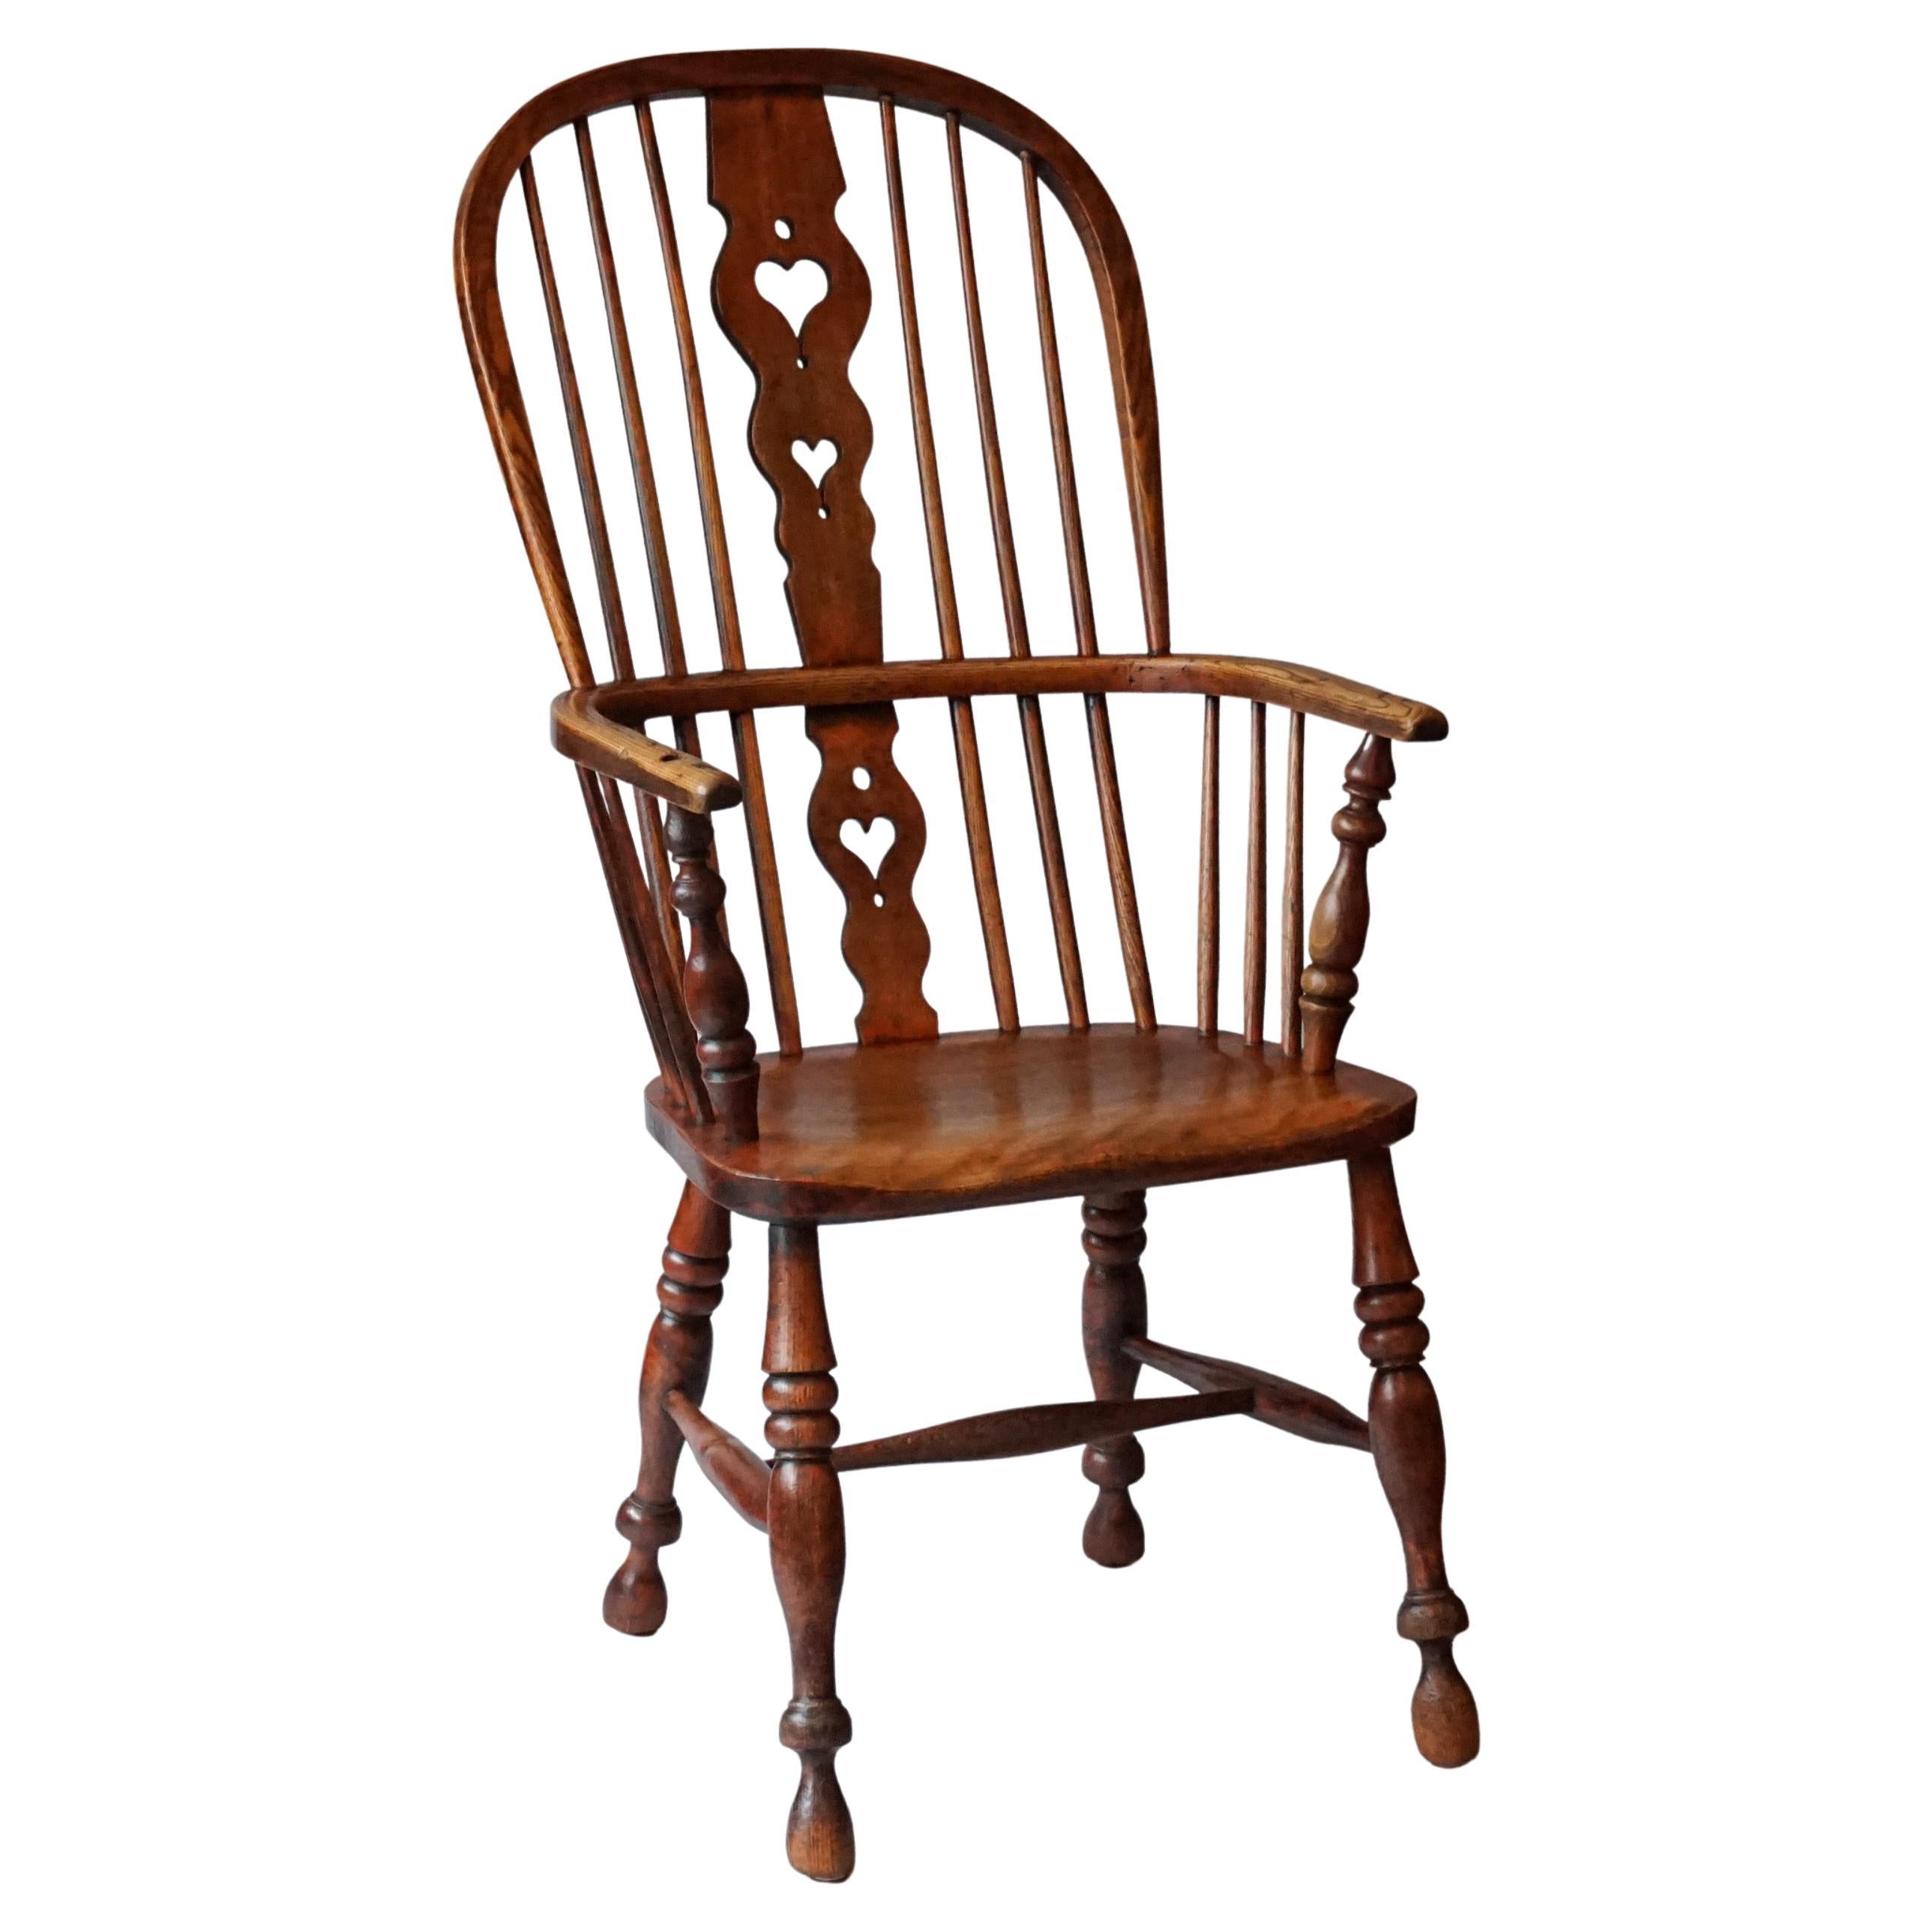 Georgianischer Windsor-Stuhl aus Ulme und Eibenholz mit Knochenrckenlehne aus dem 19. Jahrhundert